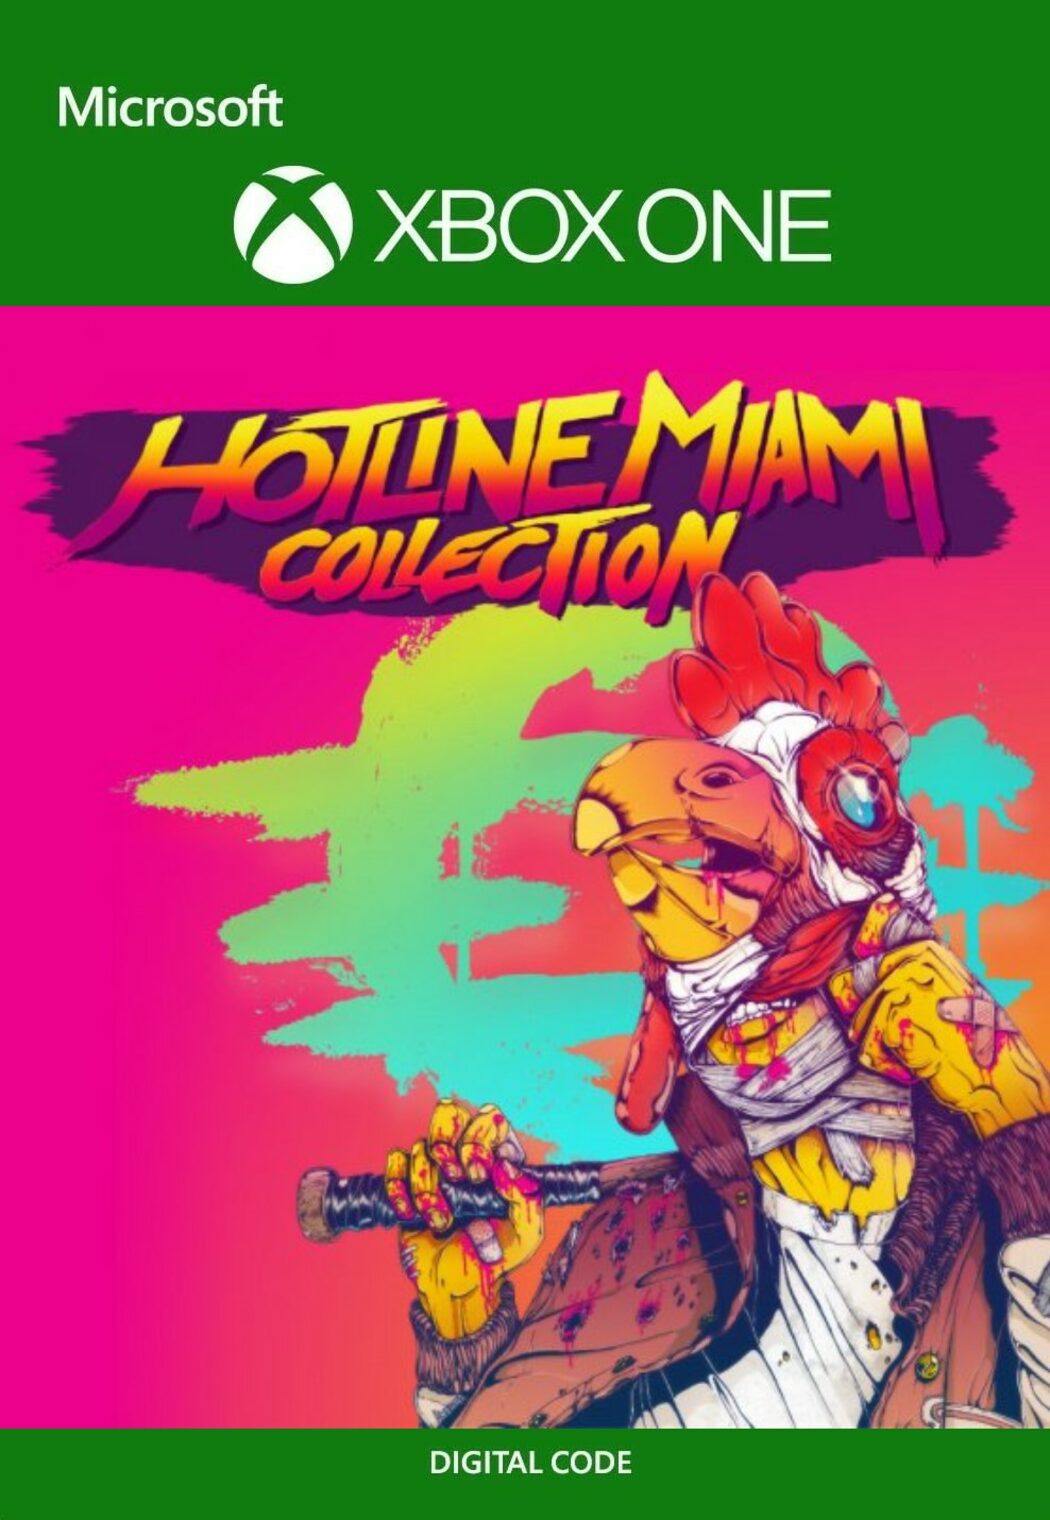 Miami collection. Hotline Miami Нинтендо. Hotline Miami collection. Пазл Хотлайн Майами. Hotline Miami collection Xbox.